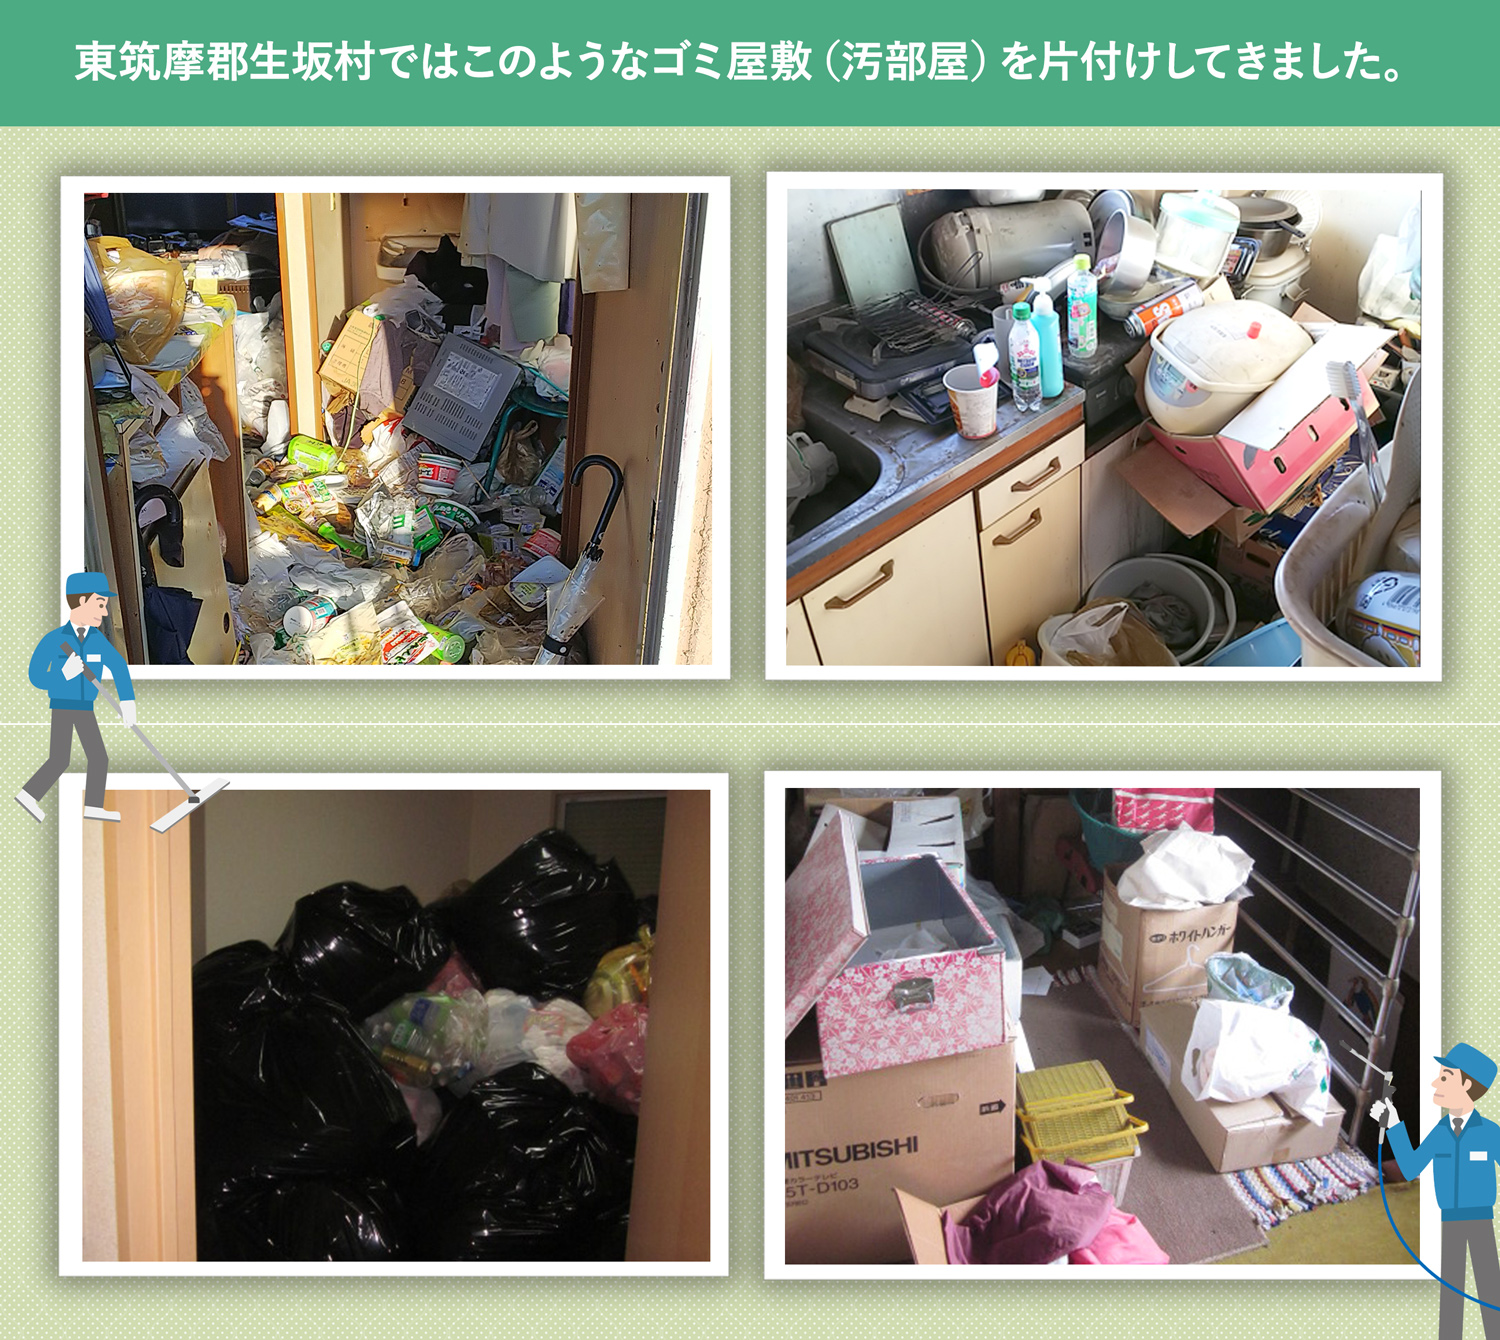 東筑摩郡生坂村で行ったで行ったごみ屋敷・汚部屋の片付けの一例